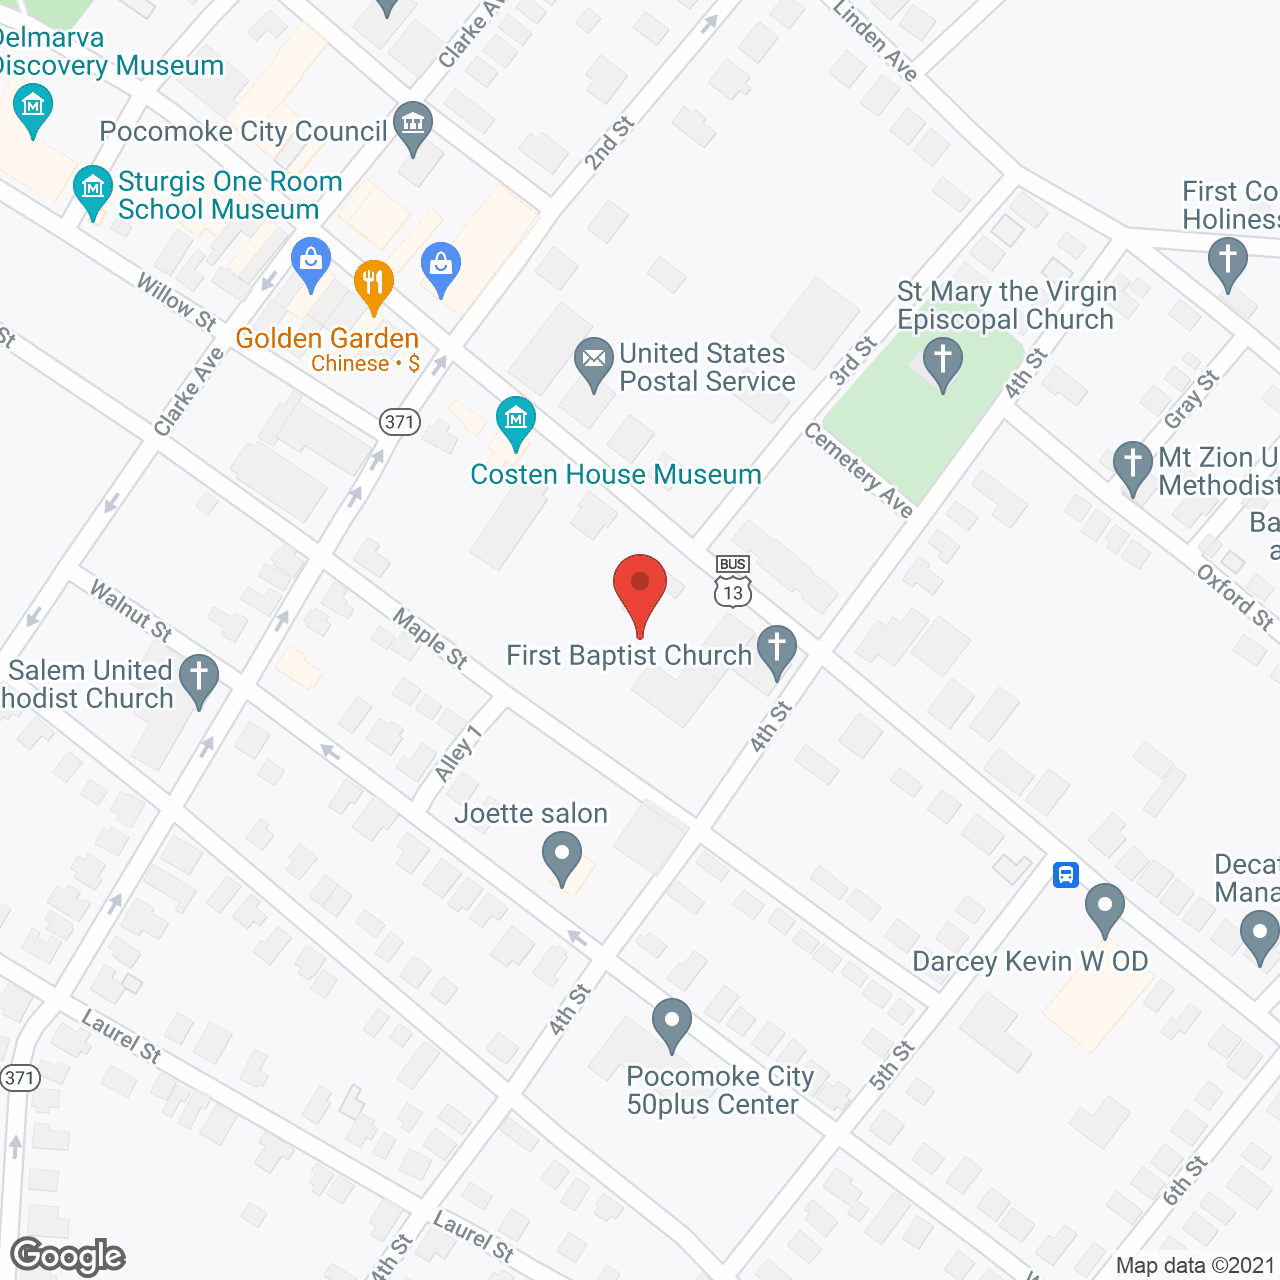 Baycare at Pocomoke in google map